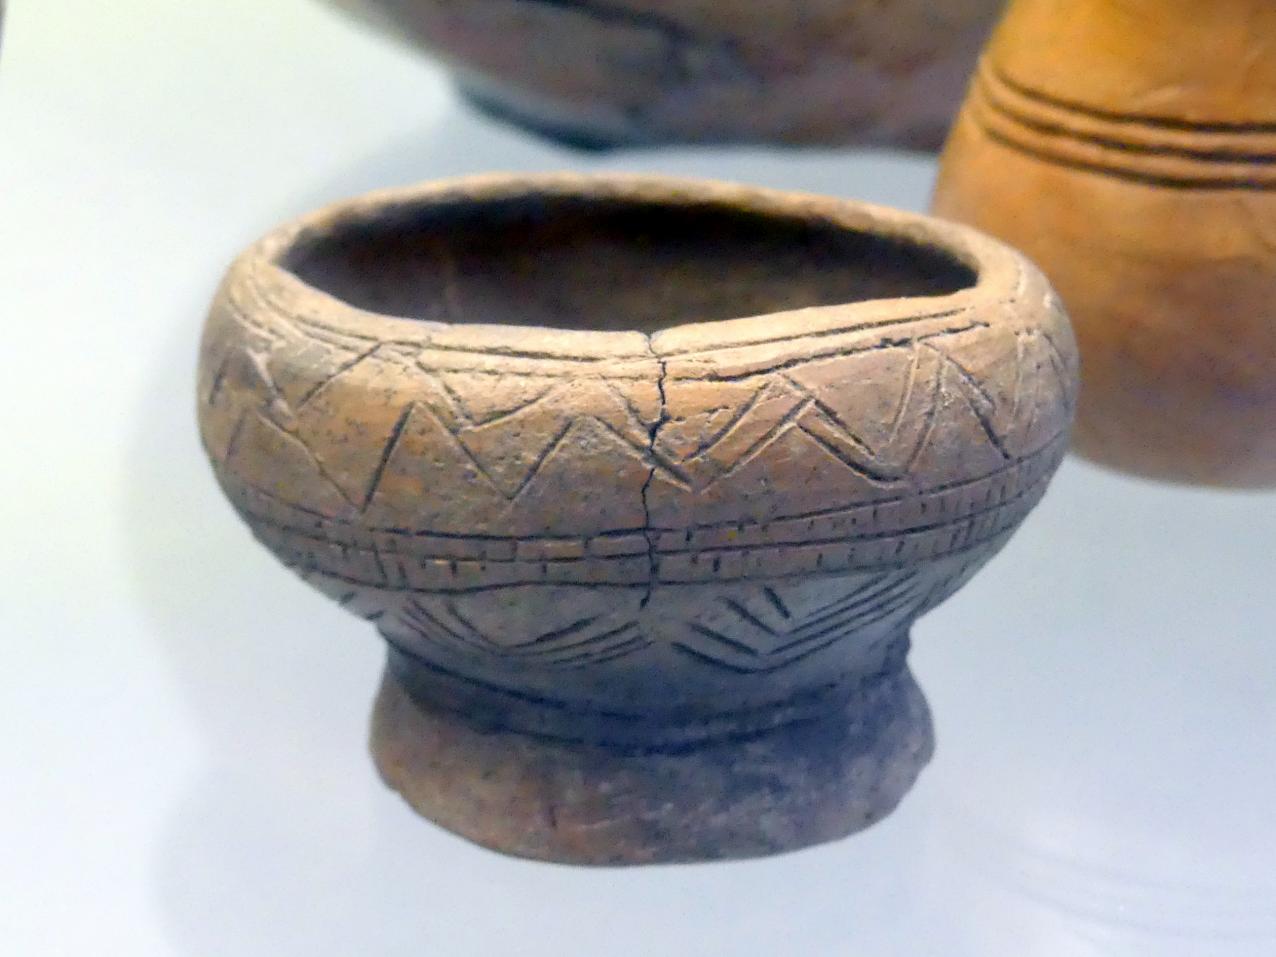 Fußschale mit gewölbtem Gefäßkörper, Frühe Bronzezeit, 3365 - 1200 v. Chr., Bild 1/2